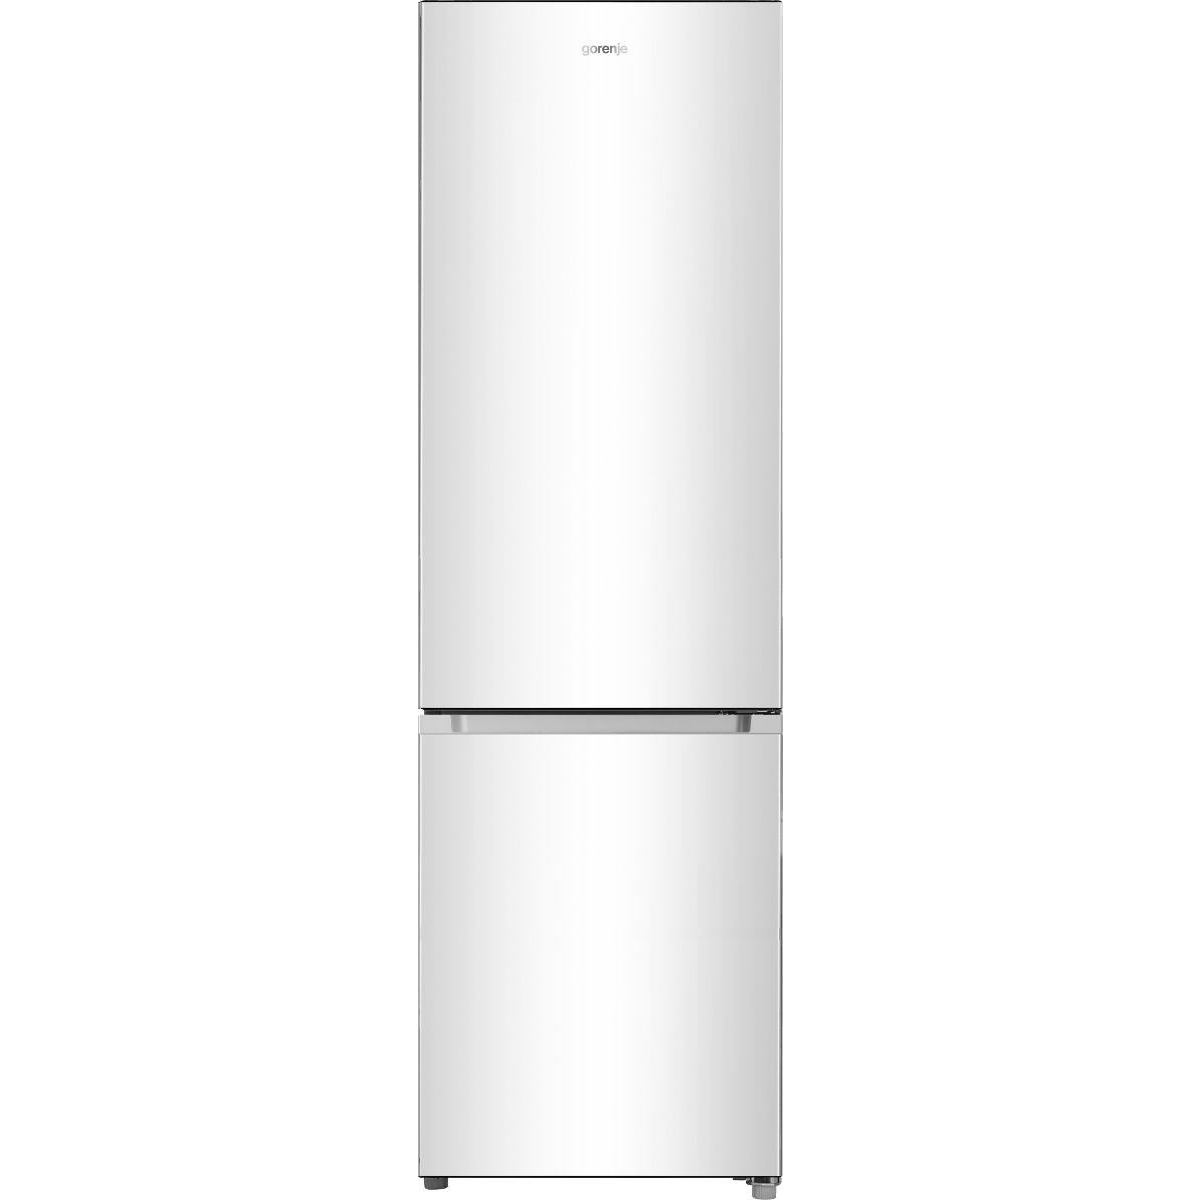 Холодильники Gorenje RK 4182 PW4 белый